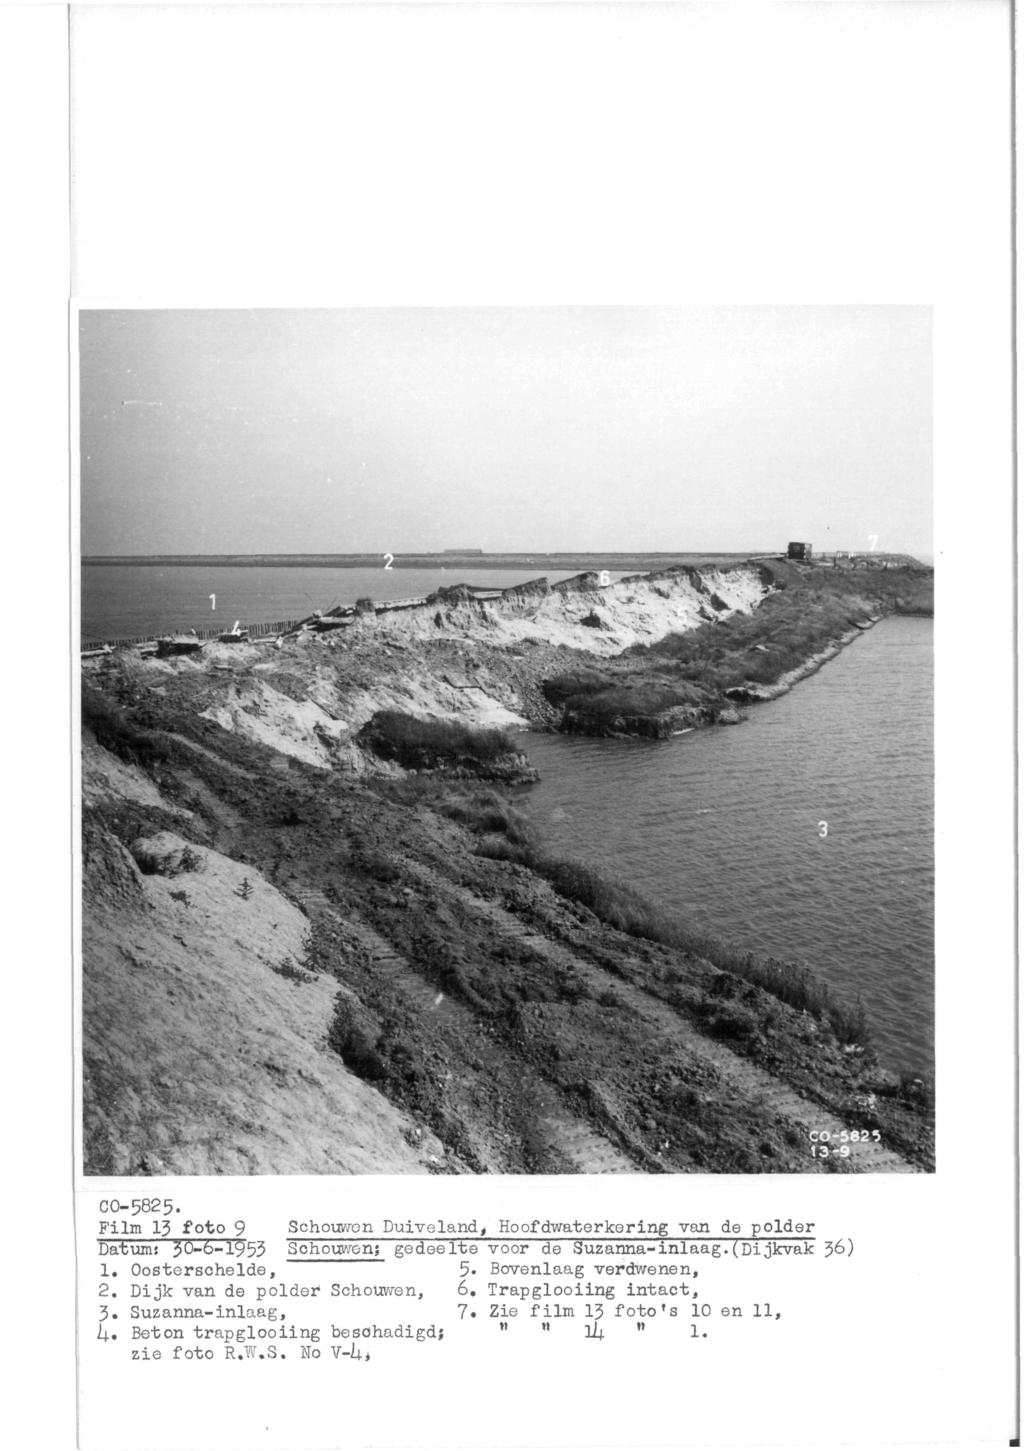 CO-582 5. Film 13 foto 9 Schouwen Duiveland, Hoofdwaterkering van de polder Datums 30-6-1953 Schouwen; gedeelte voor de Suzanna-inlaag. (Dijkvak J>6) 1. Oosterschelde, 5.